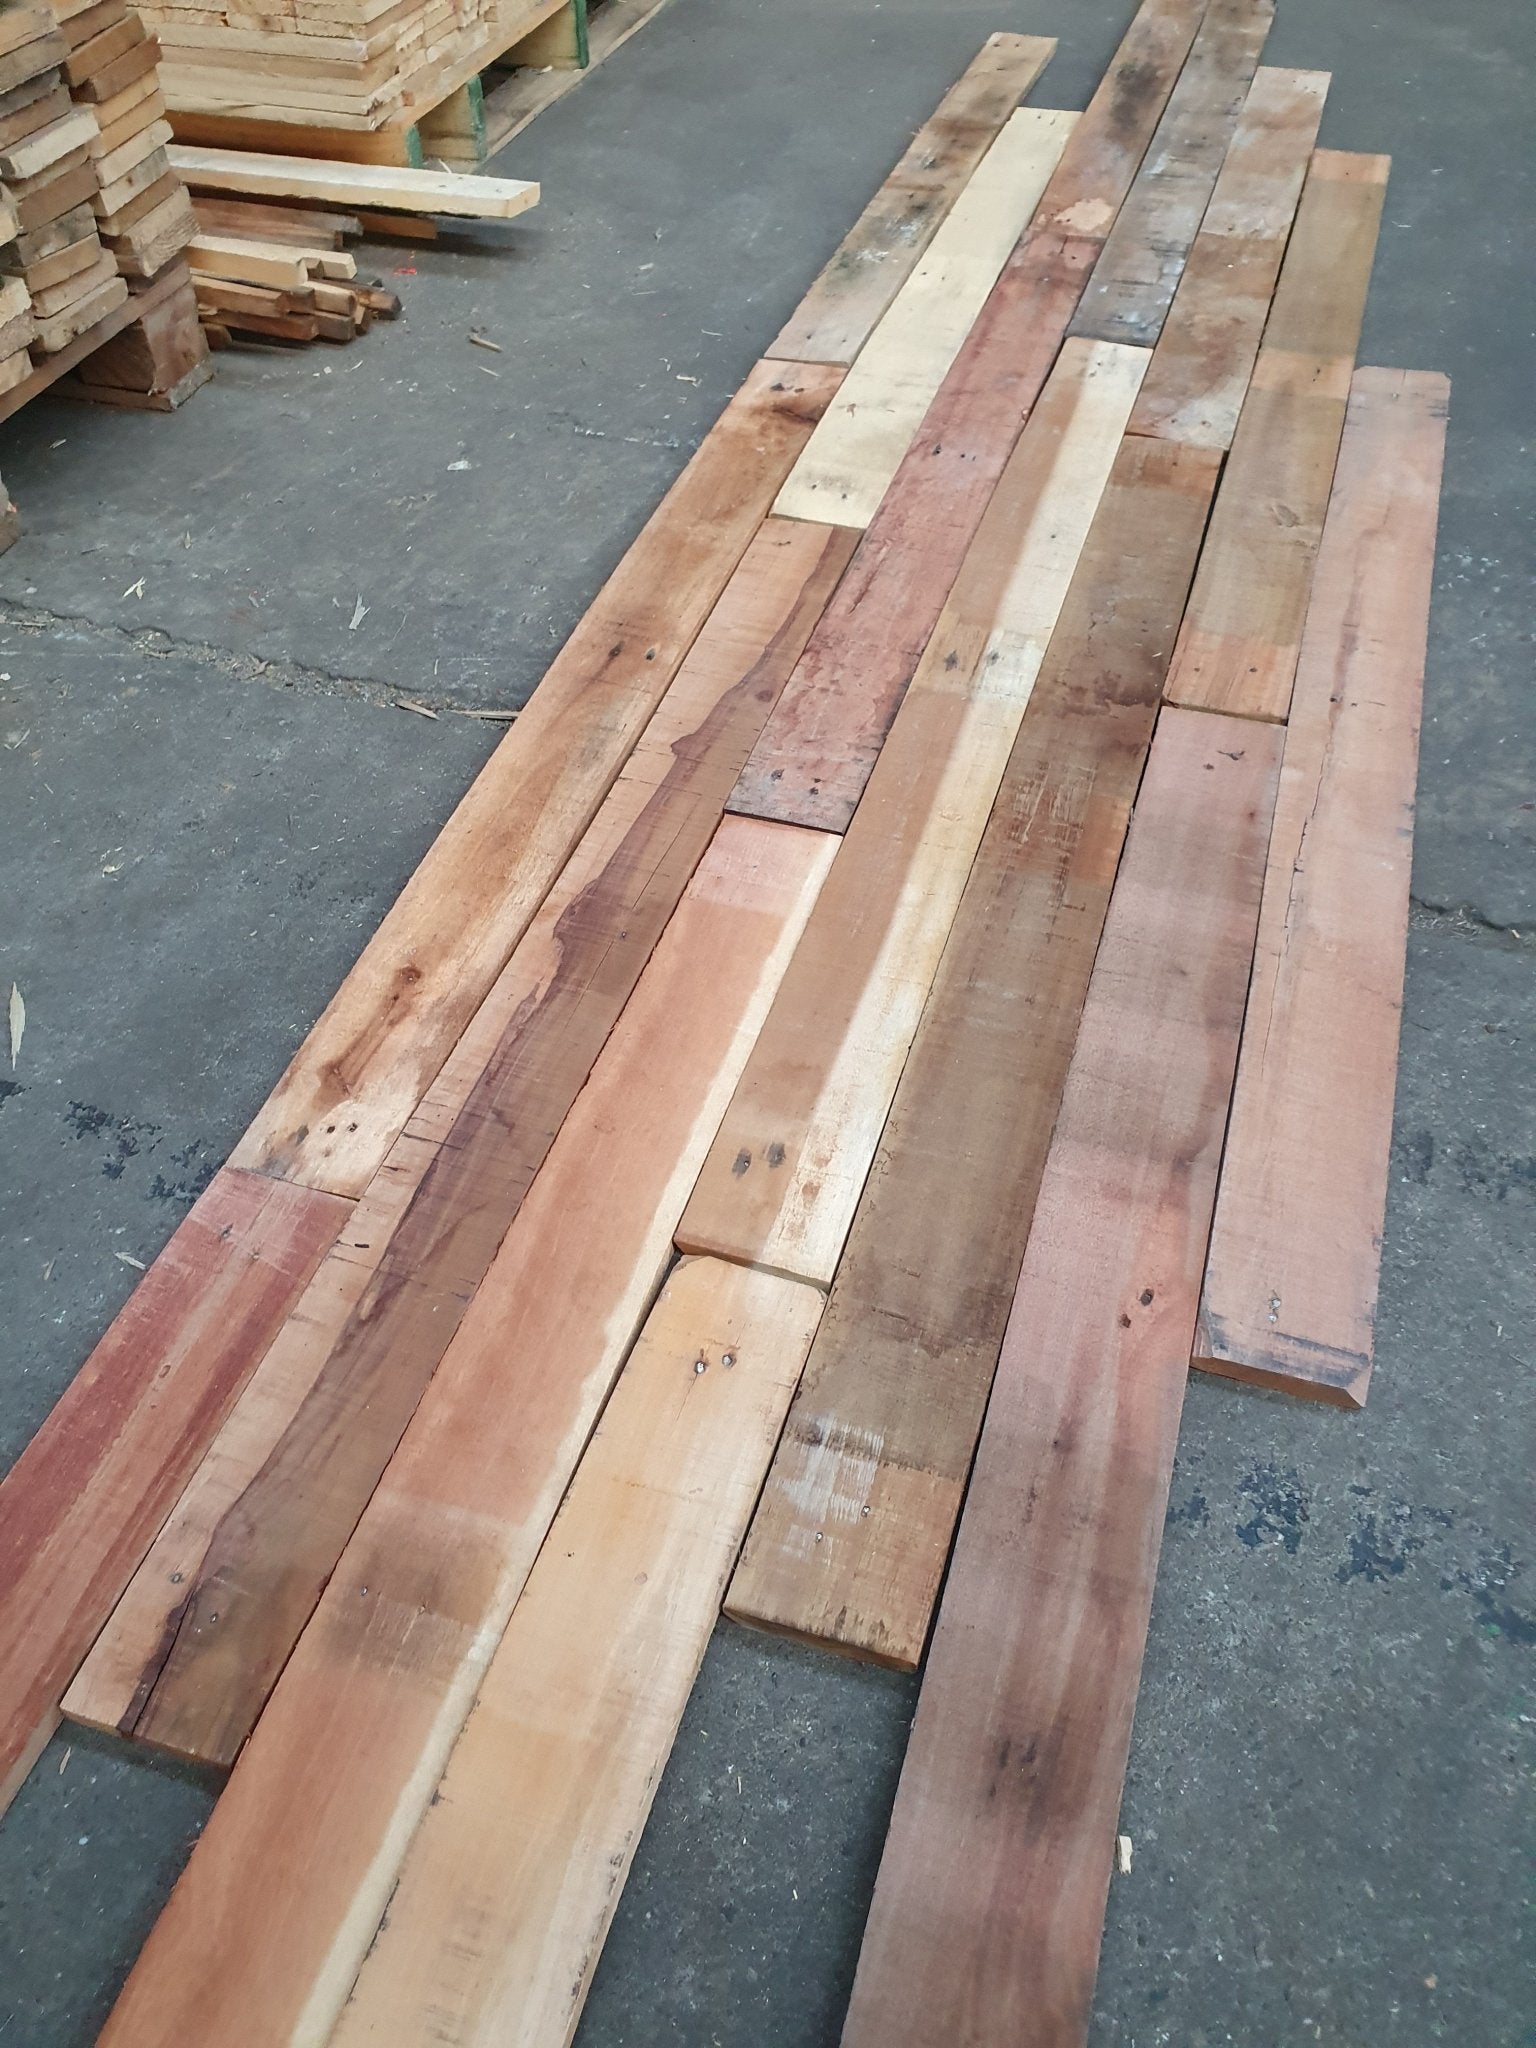 Duurzaam bouwen met aandacht voor detail: De recupwood planken, zorgvuldig ontnageld en voorbereid voor uw project.